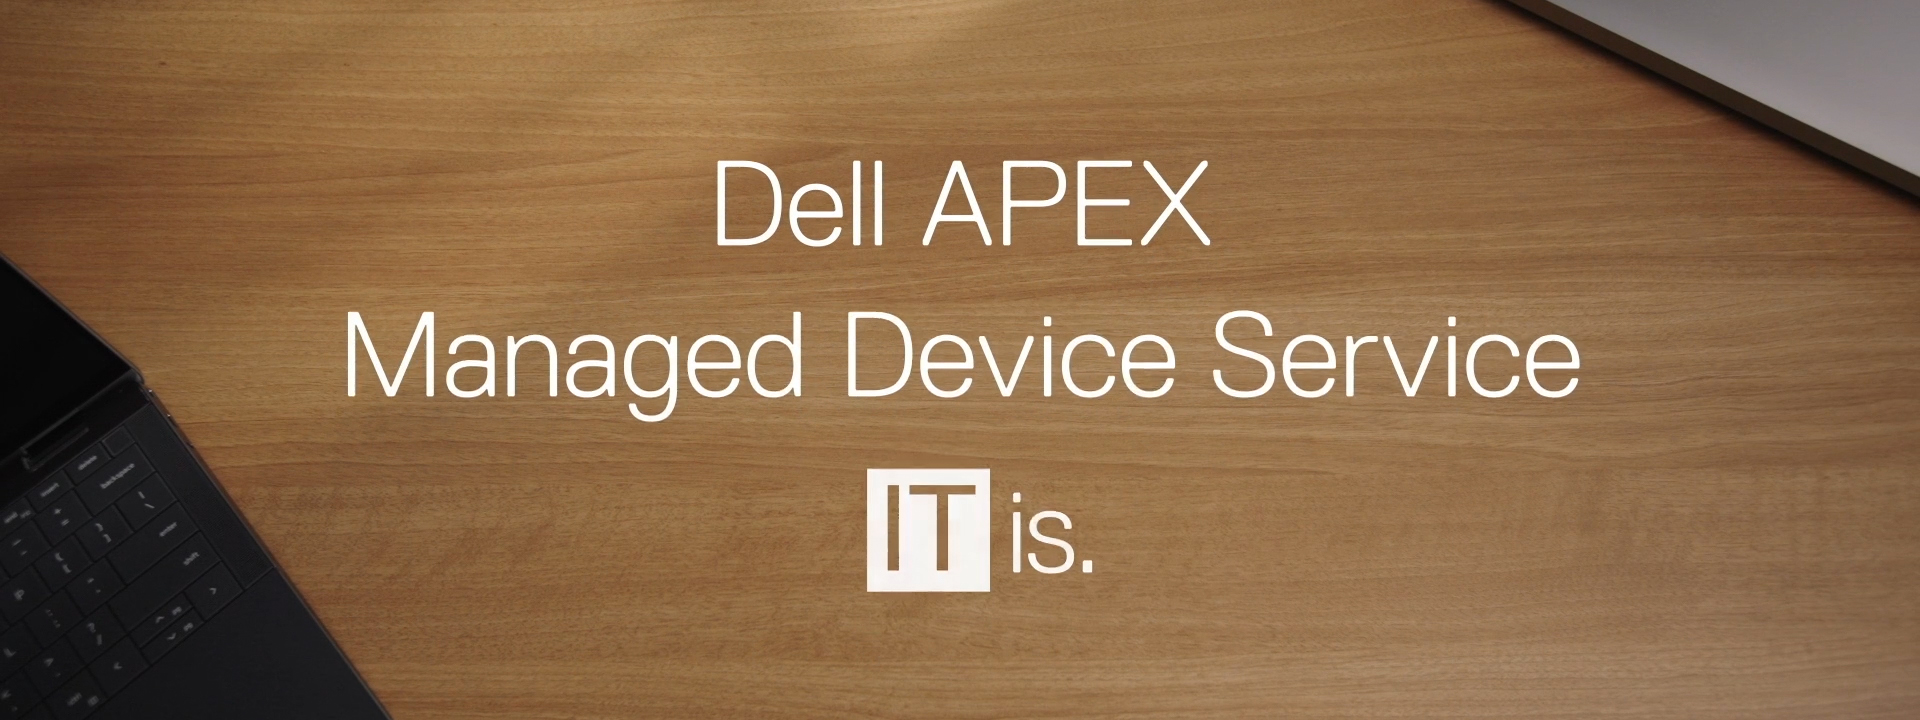 Marketing Campaign for Dell APEX MDS